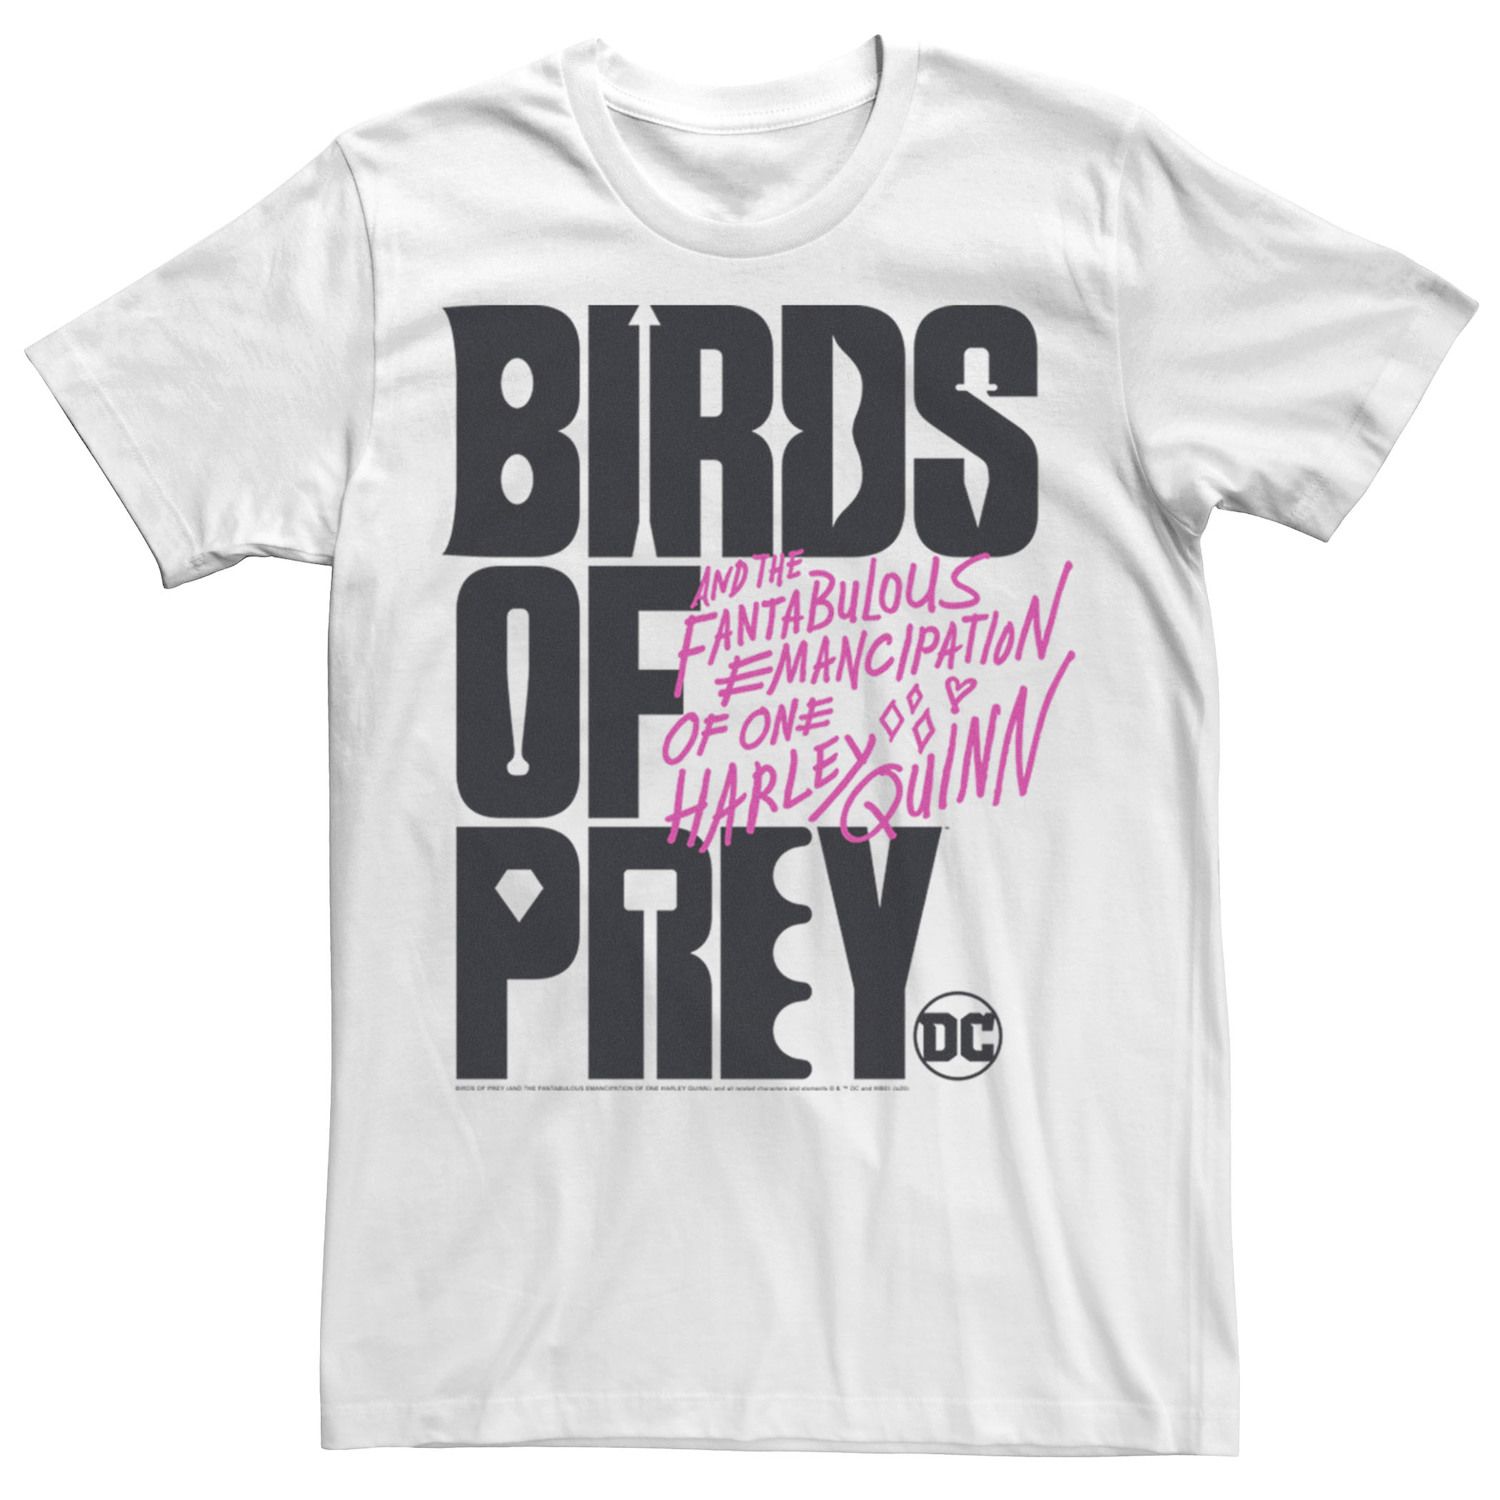 Мужская футболка с текстовым логотипом «Хищные птицы» DC Comics наклейка патч для одежды dc хищные птицы 2